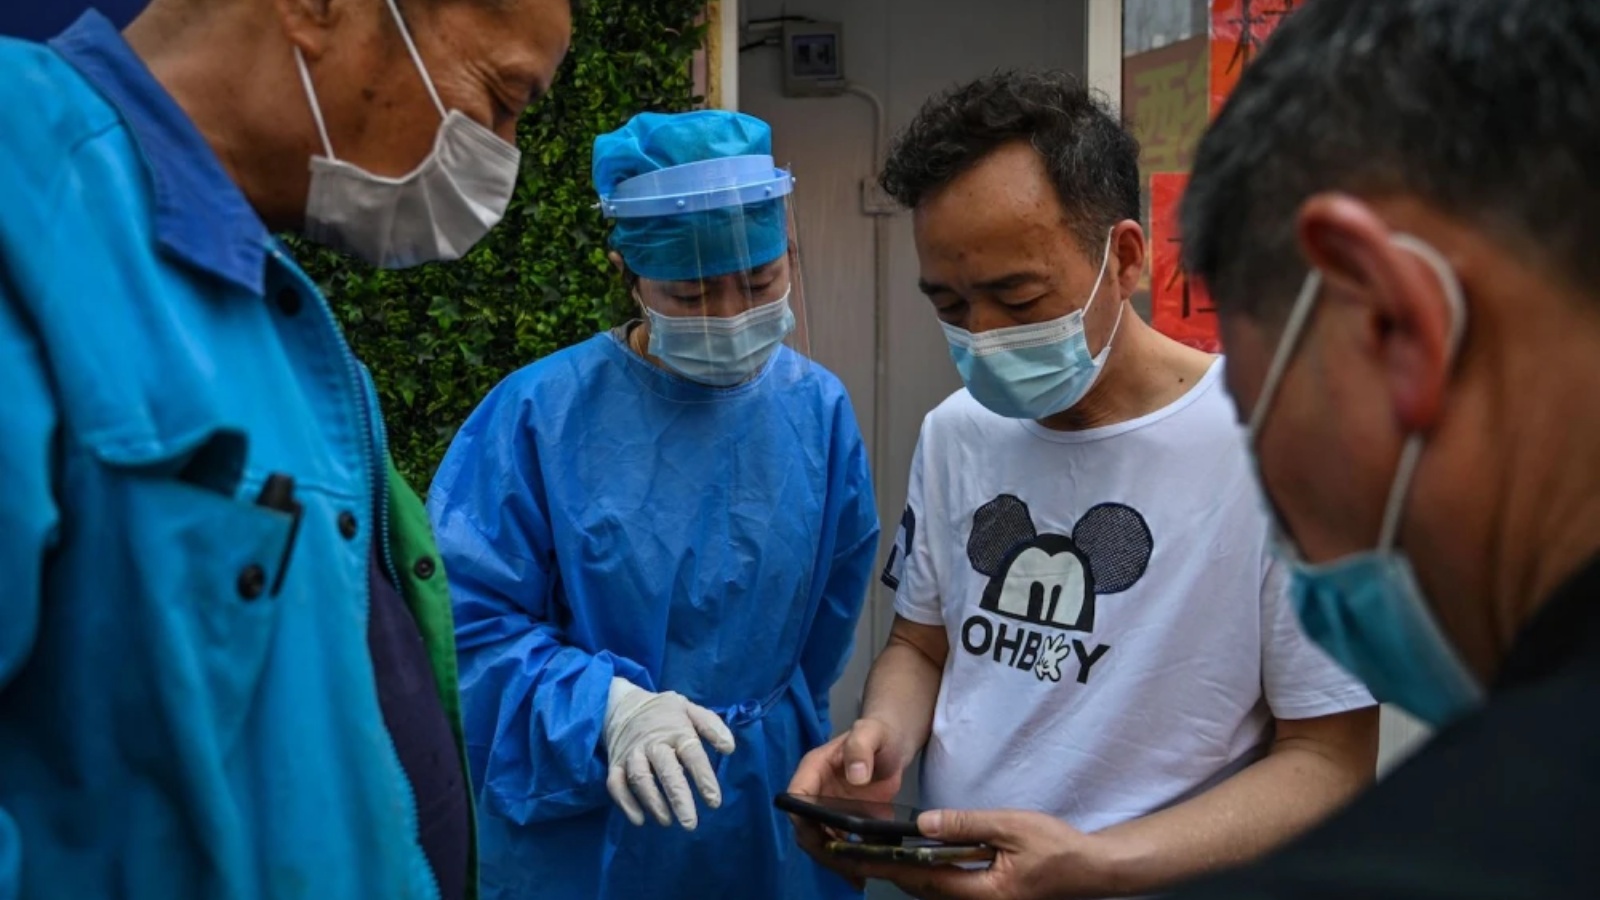 عامل صحي يساعد الناس في الحصول على رمز ليتمكنوا من اختبار COVID-19 في شنغهاي في 14 مارس